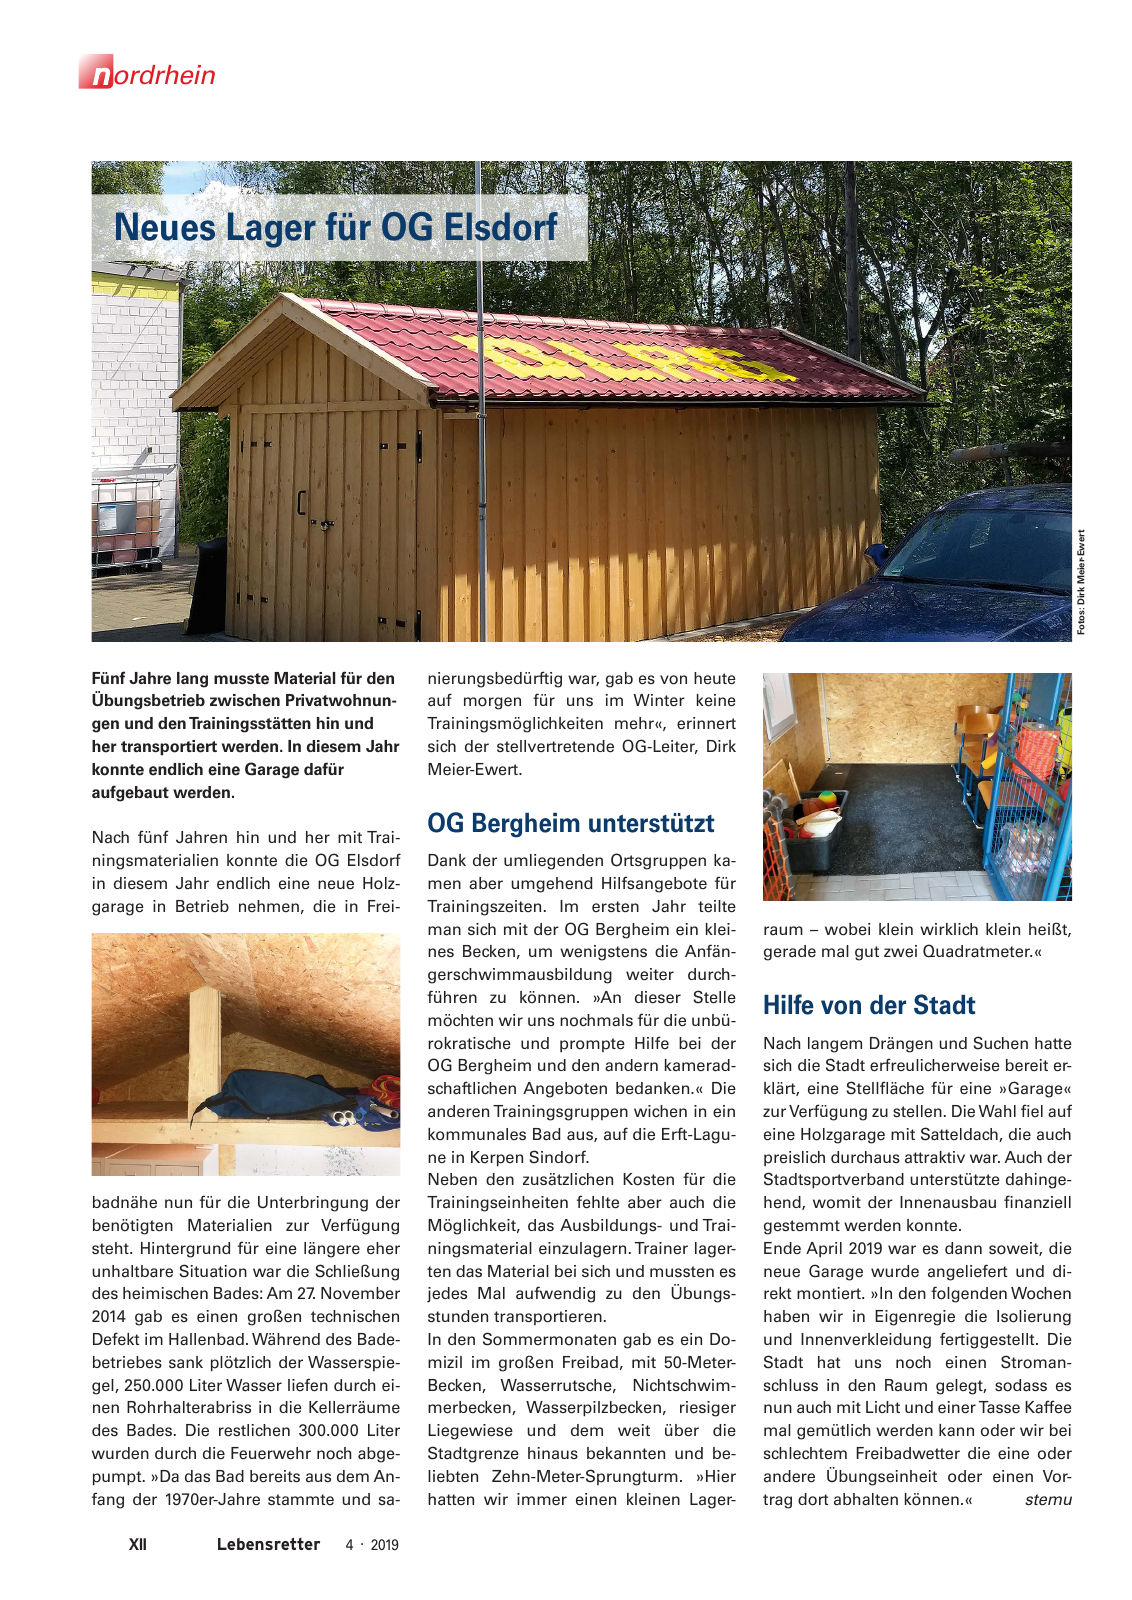 Vorschau Lebensretter 4/2019 -  Nordrhein Regionalausgabe Seite 14